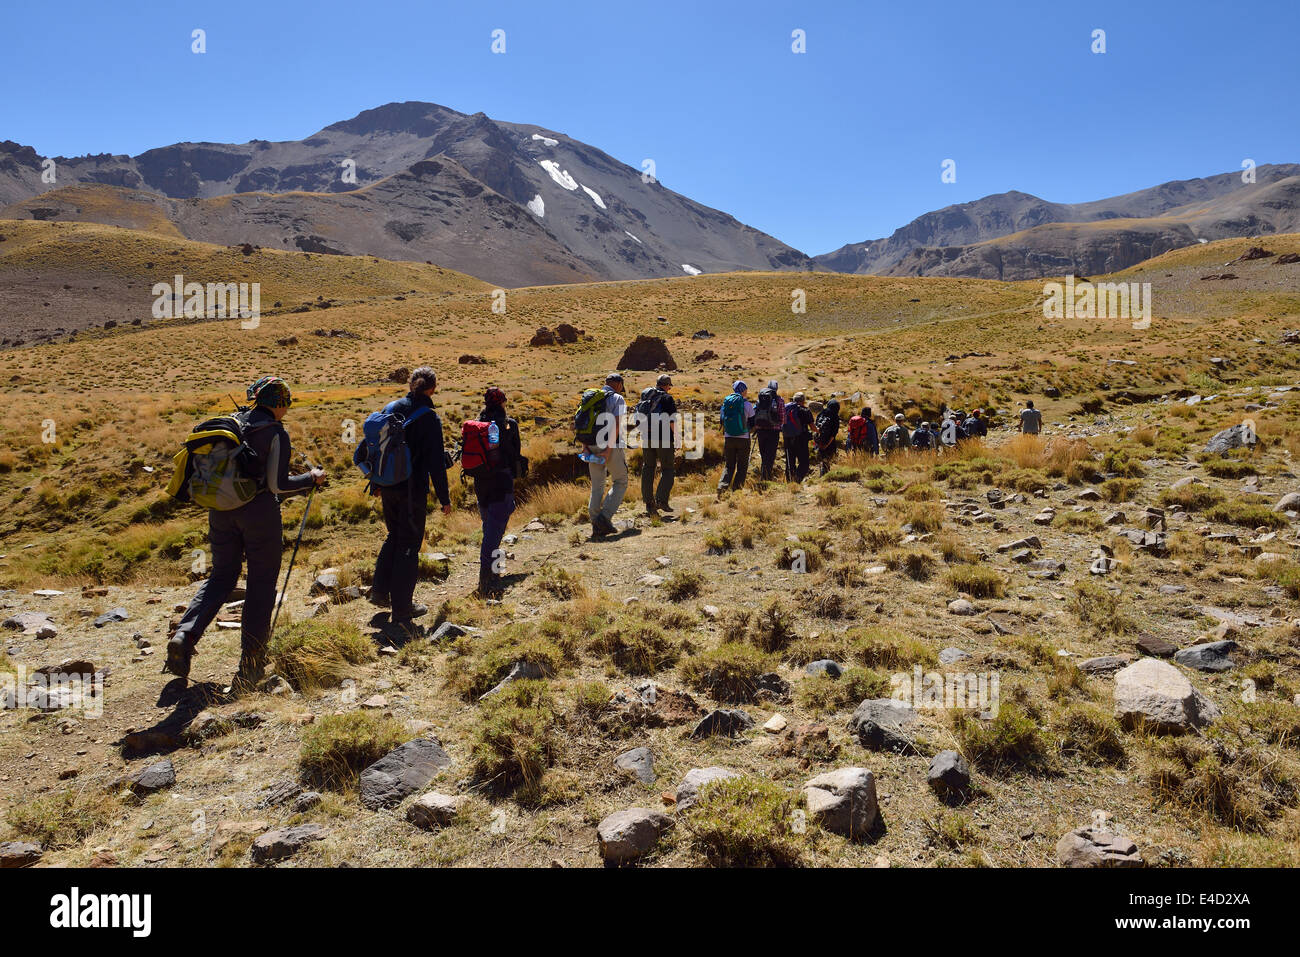 Groupe de personnes randonnées sur Hesarshal plateau, Takht-e Suleyman, massif de montagnes Alborz, province de Mazandaran, la Perse, l'Iran Banque D'Images